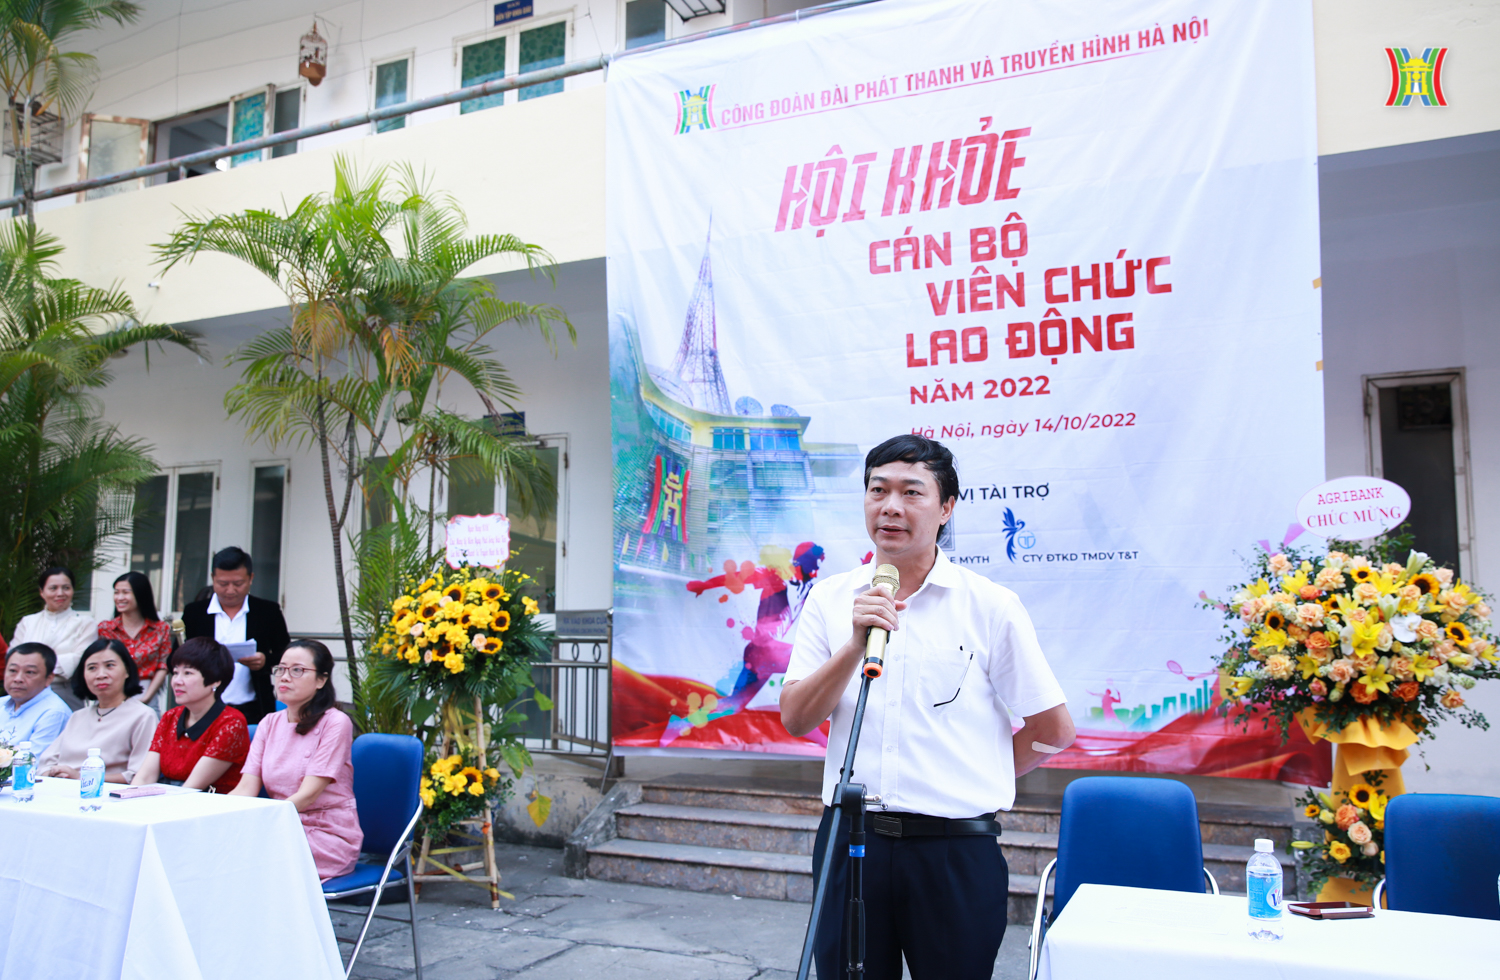 Hội khỏe cán bộ viên chức lao động kỷ niệm 68 năm thành lập Đài PTTH Hà Nội